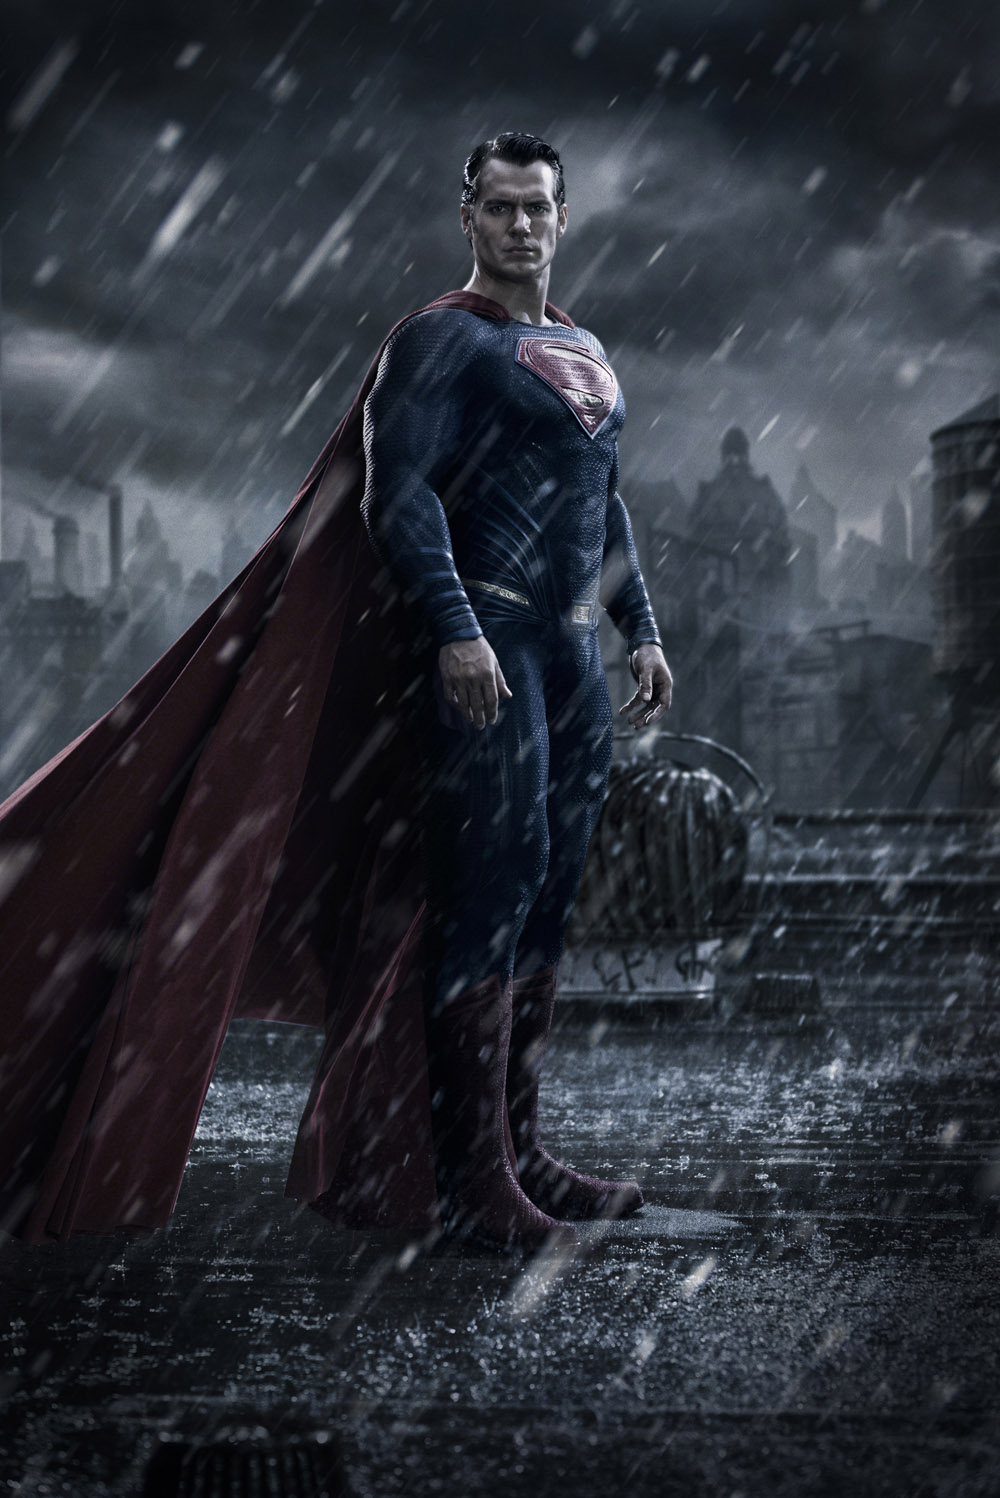 באטמן נגד סופרמן: שחר הצדק